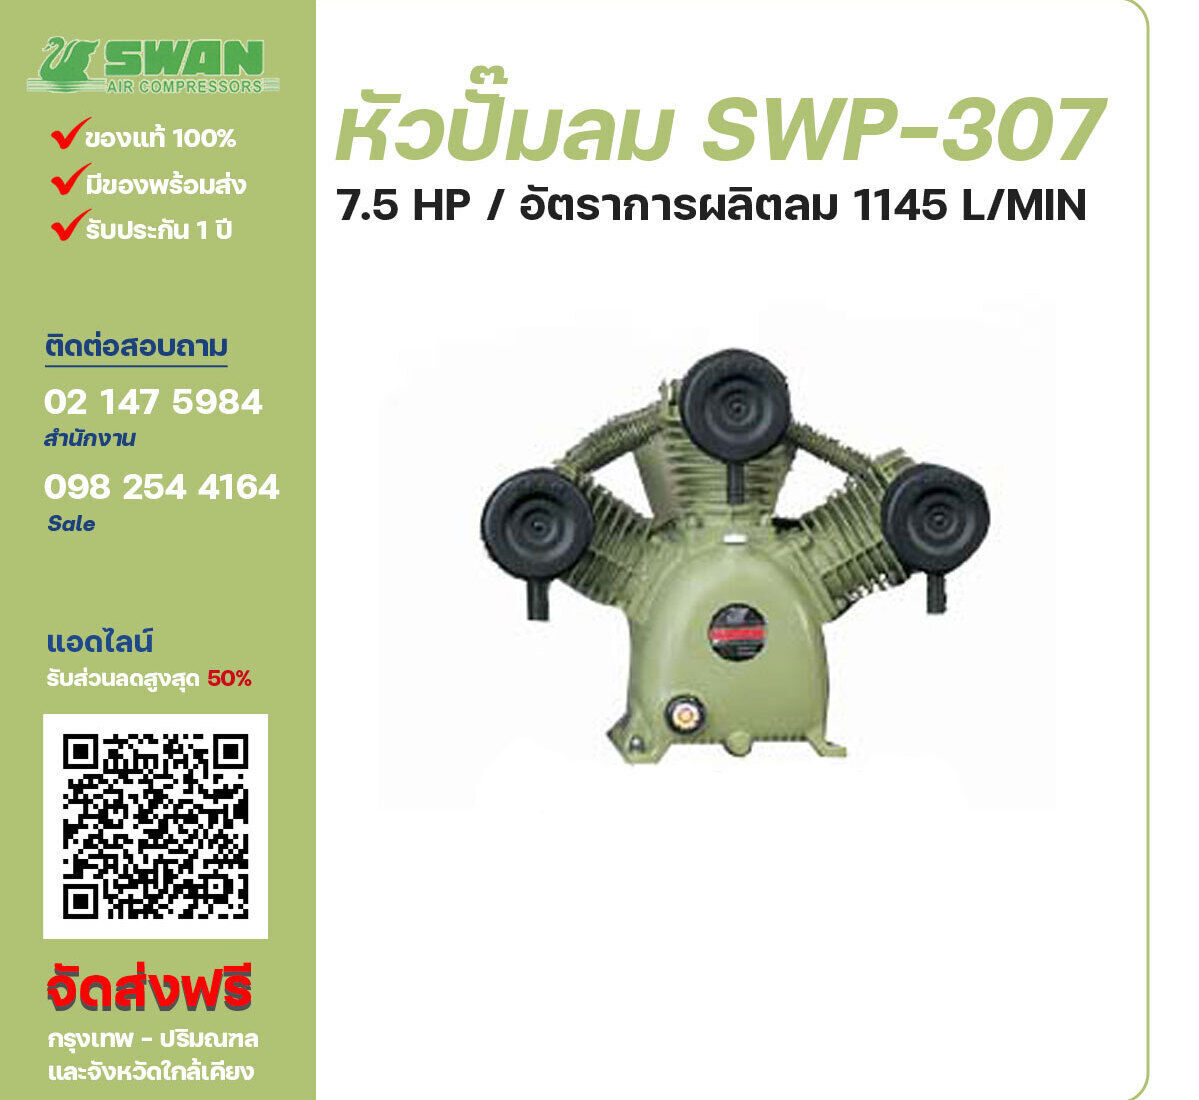 จำหน่ายหัวปั๊มลมสวอน ของแท้ 100% SWAN Bare Compressor รุ่น SVP-307 ขนาด 7.5 แรงม้า อัตราการผลิตลม 872 ลิตร / นาที รับประกัน 3 เดือน ตามเงื่อนไขของบริษัทฯ จัดส่งฟรี กรุงเทพ-ปริมณฑล